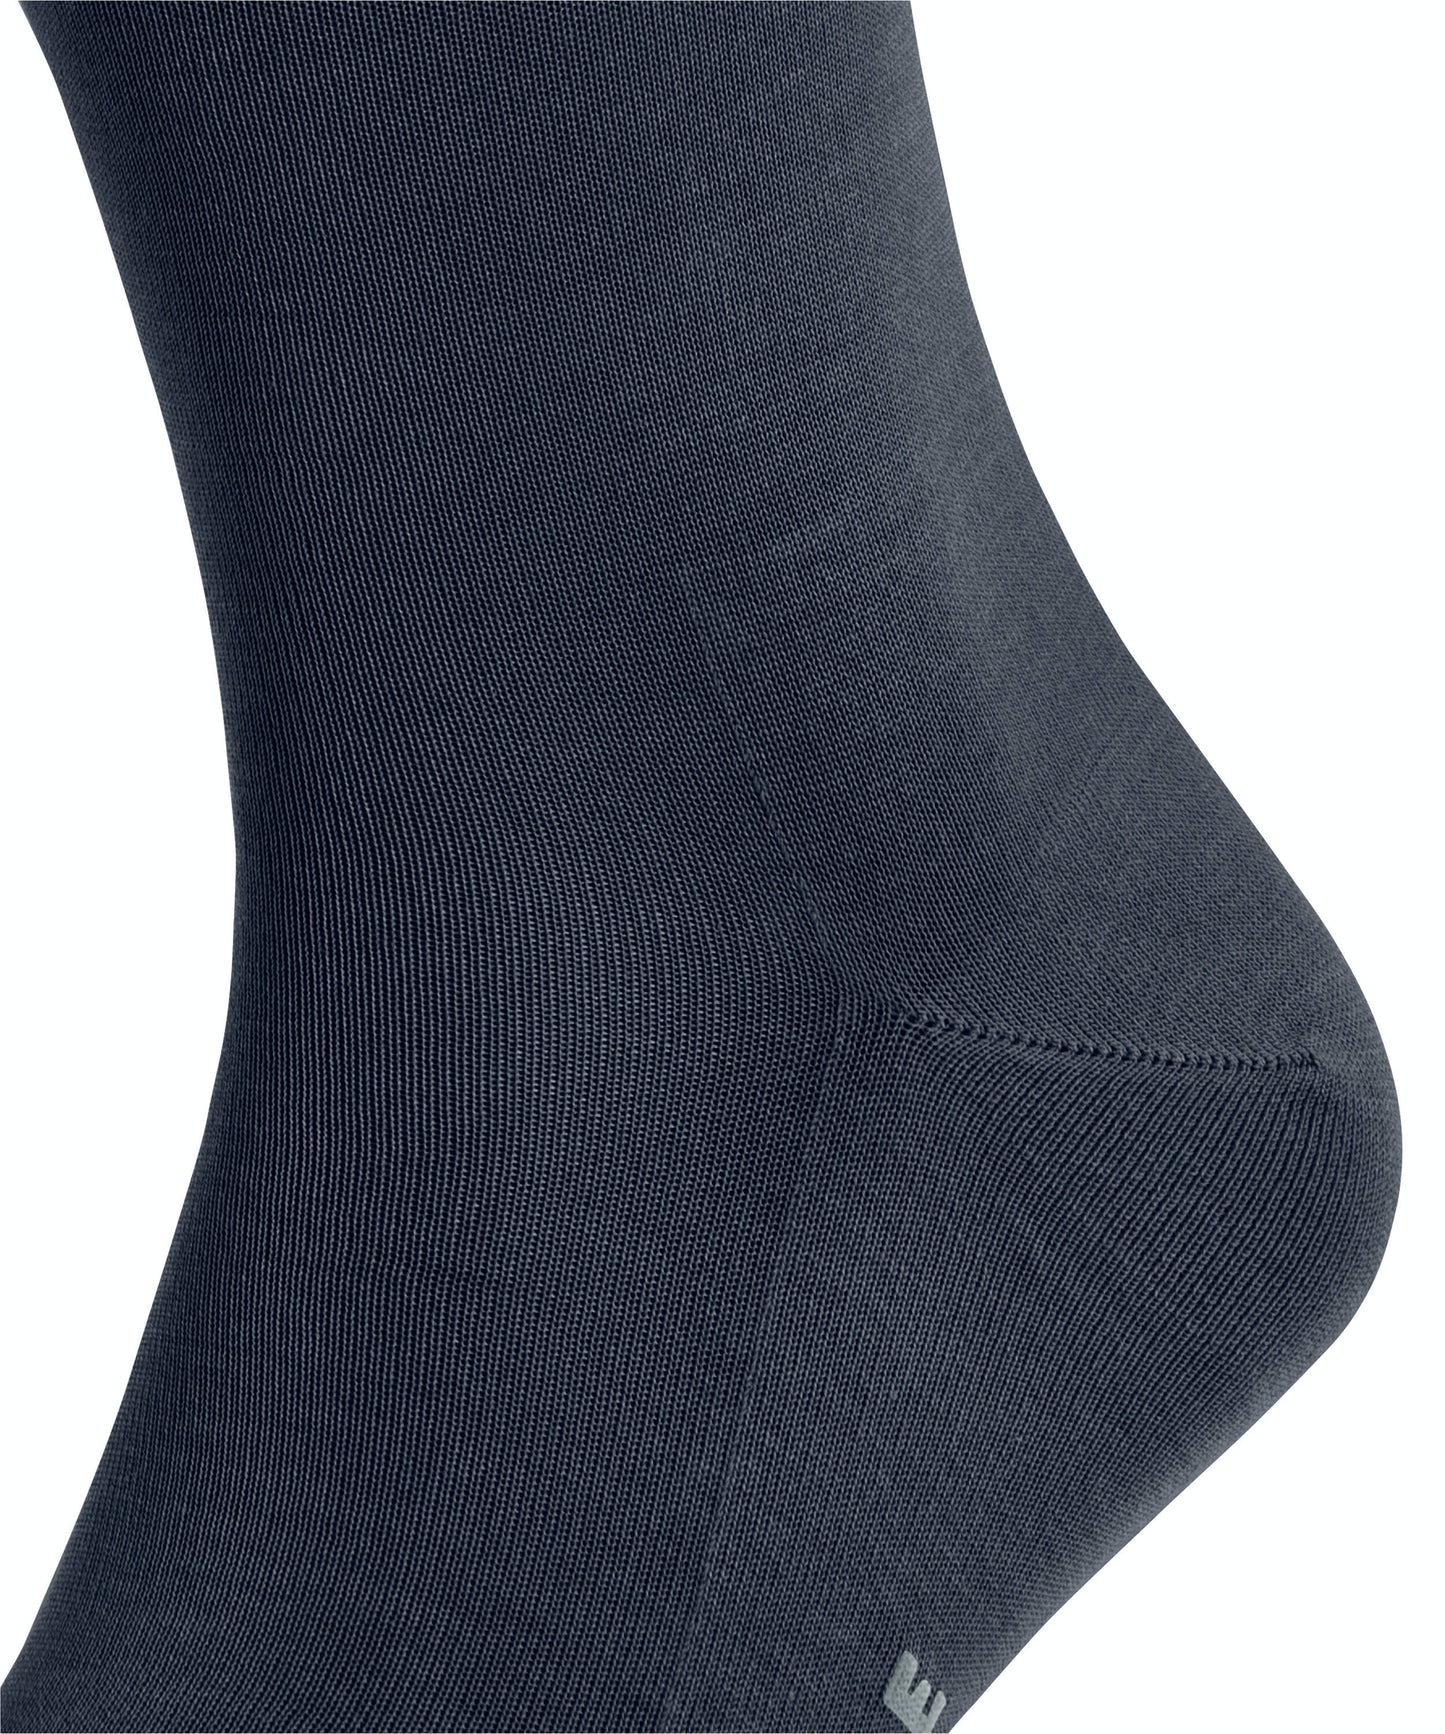 FALKE TIAGO Socks in Space Blue 14662